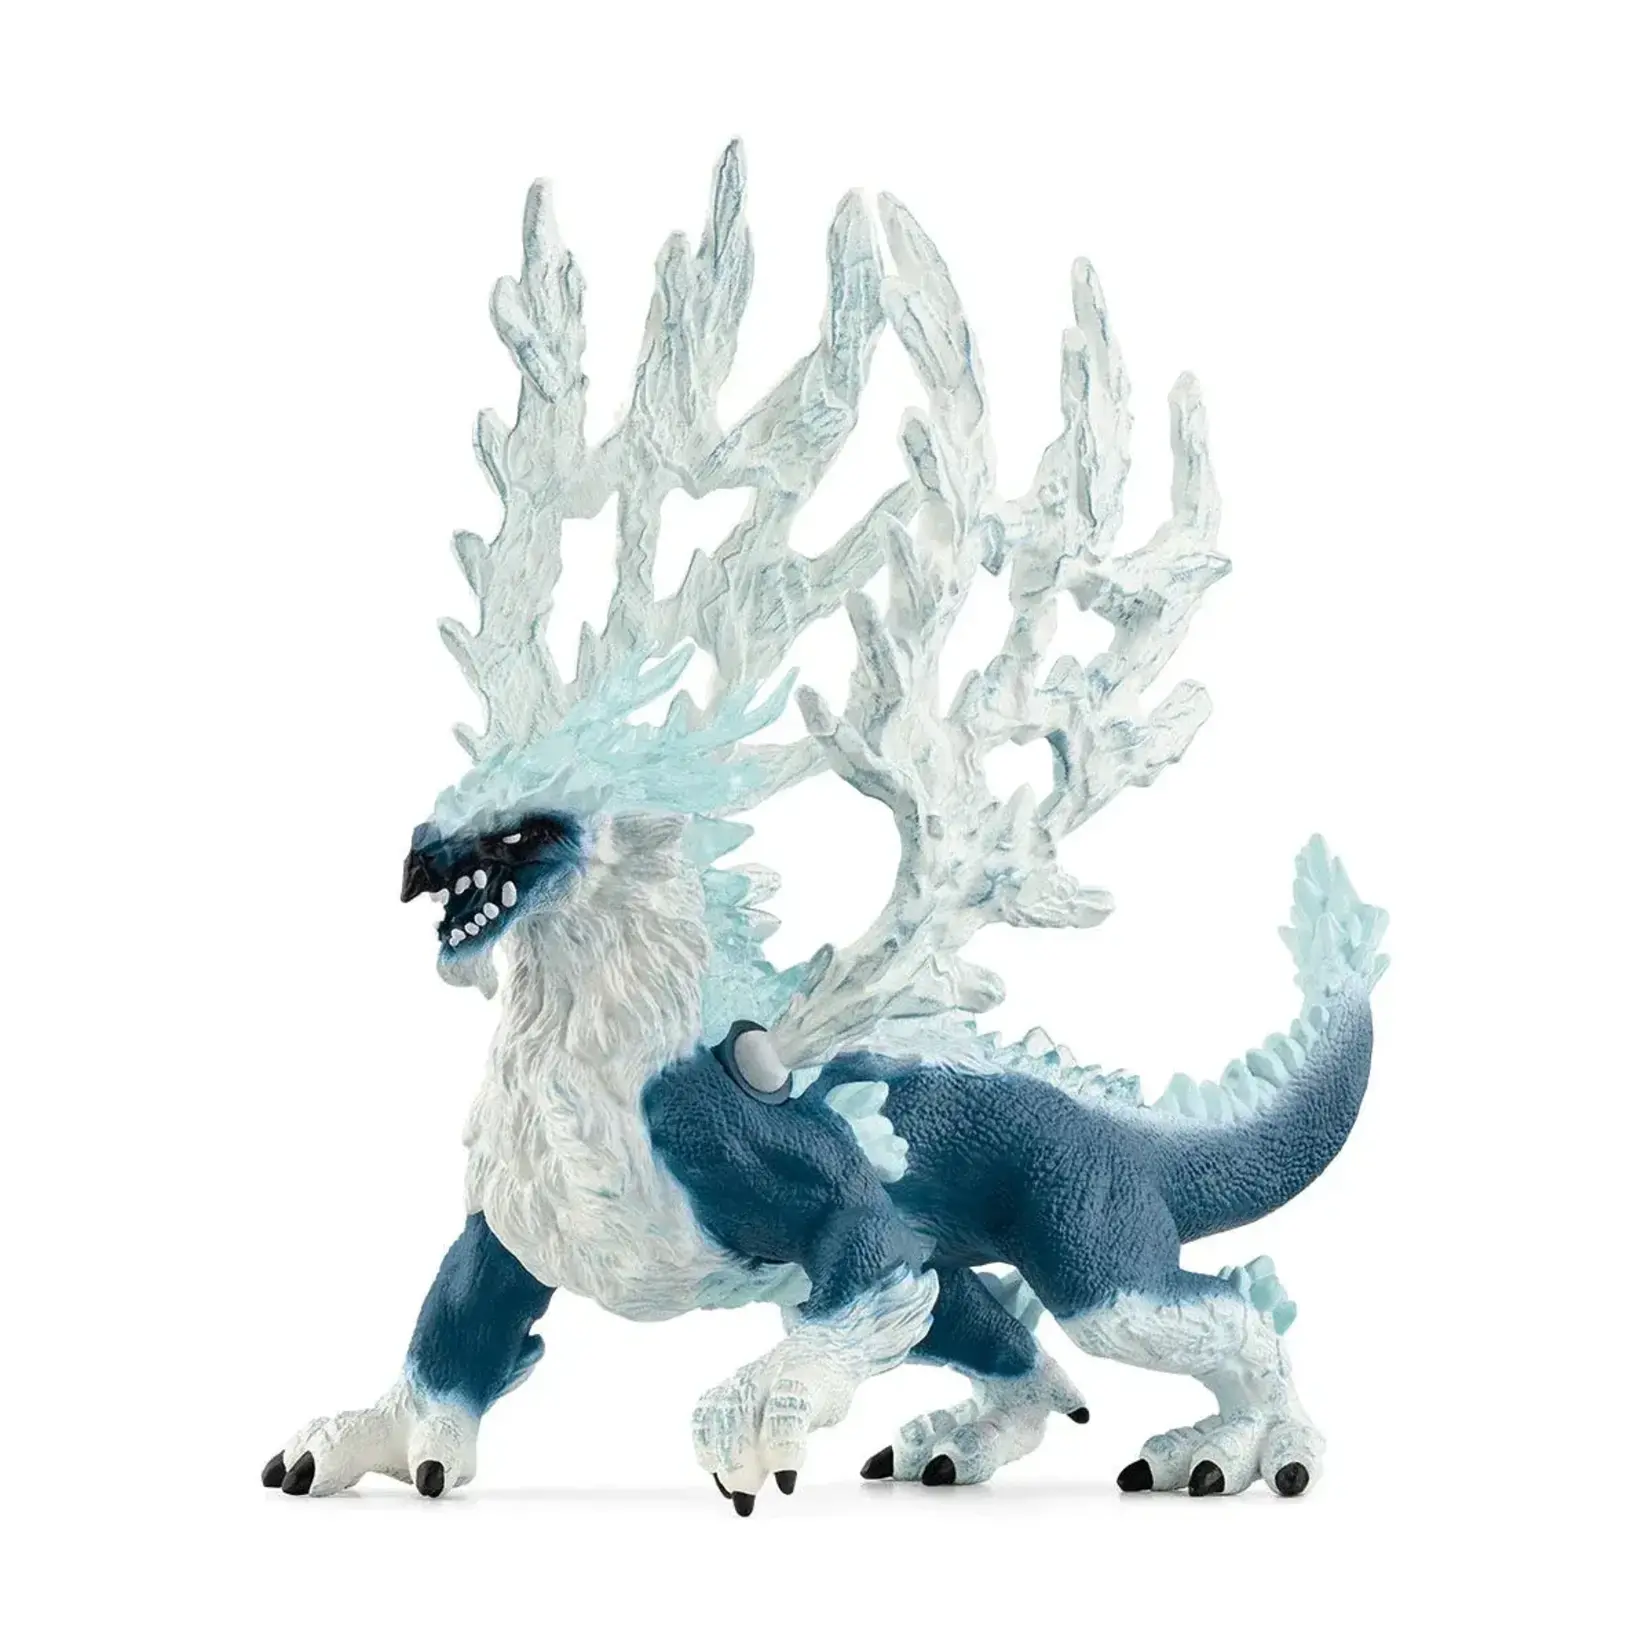 Schleich Ice Dragon Figure